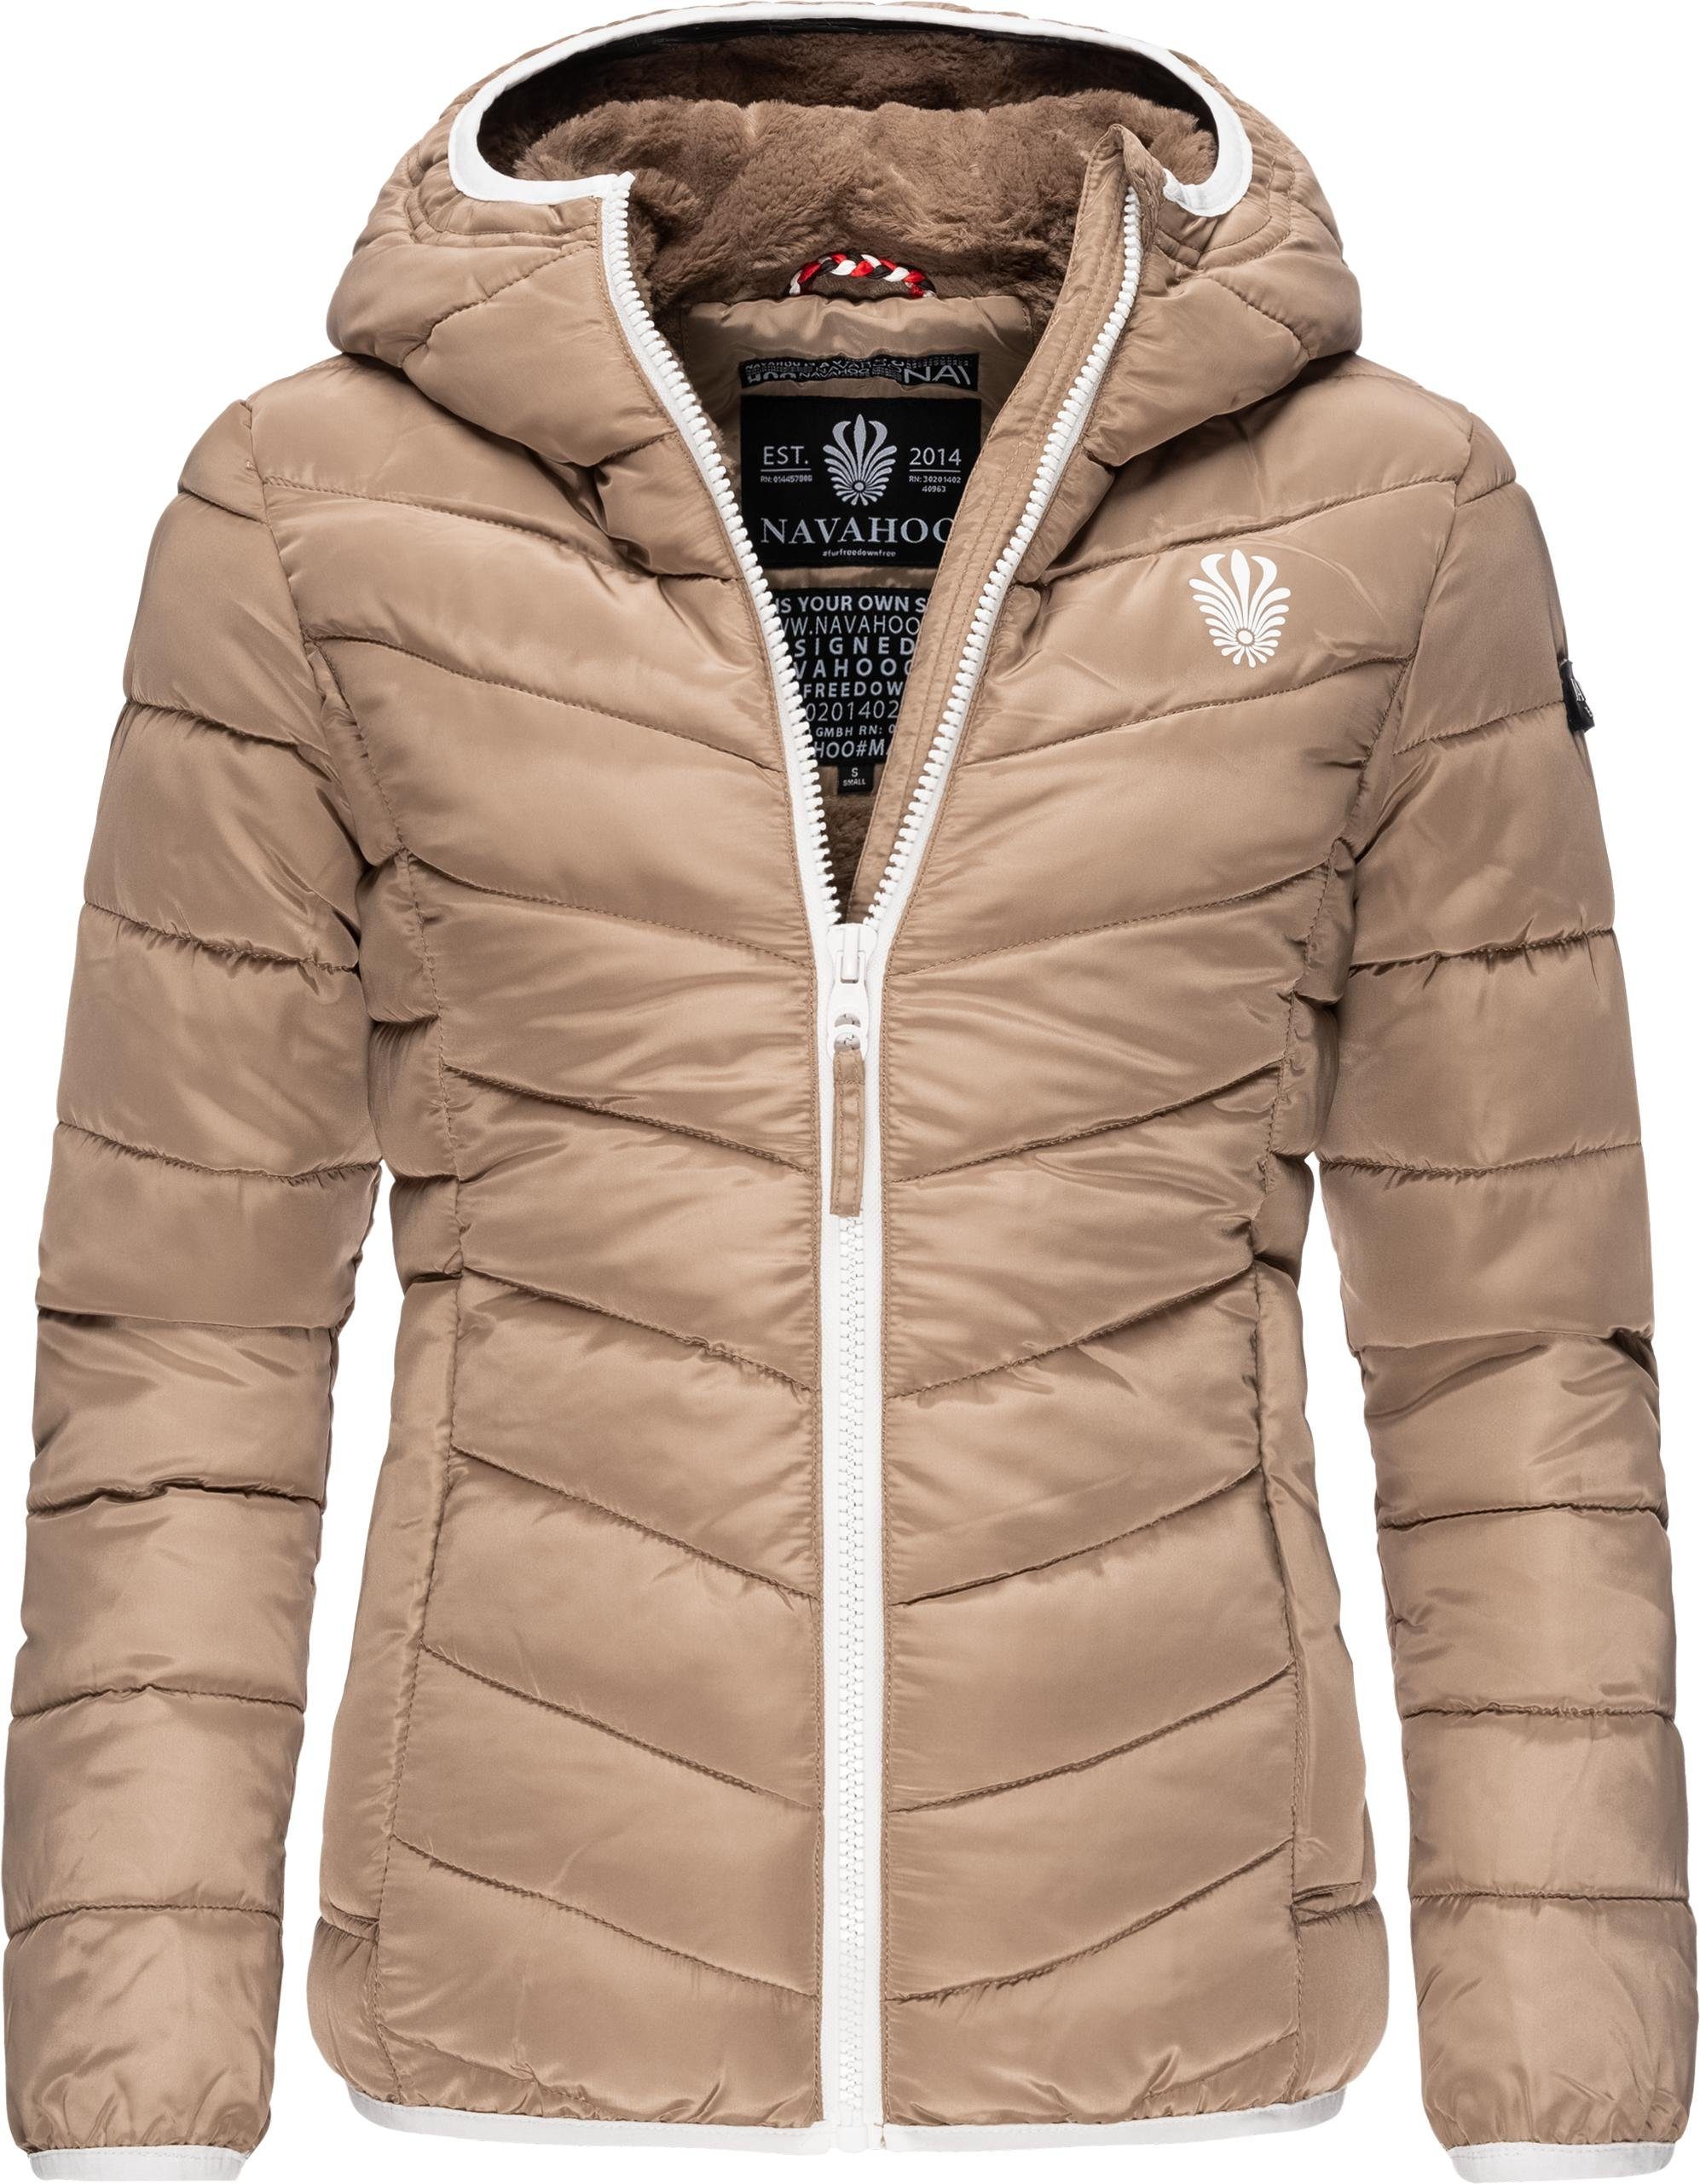 Braune Jacke online kaufen | OTTO